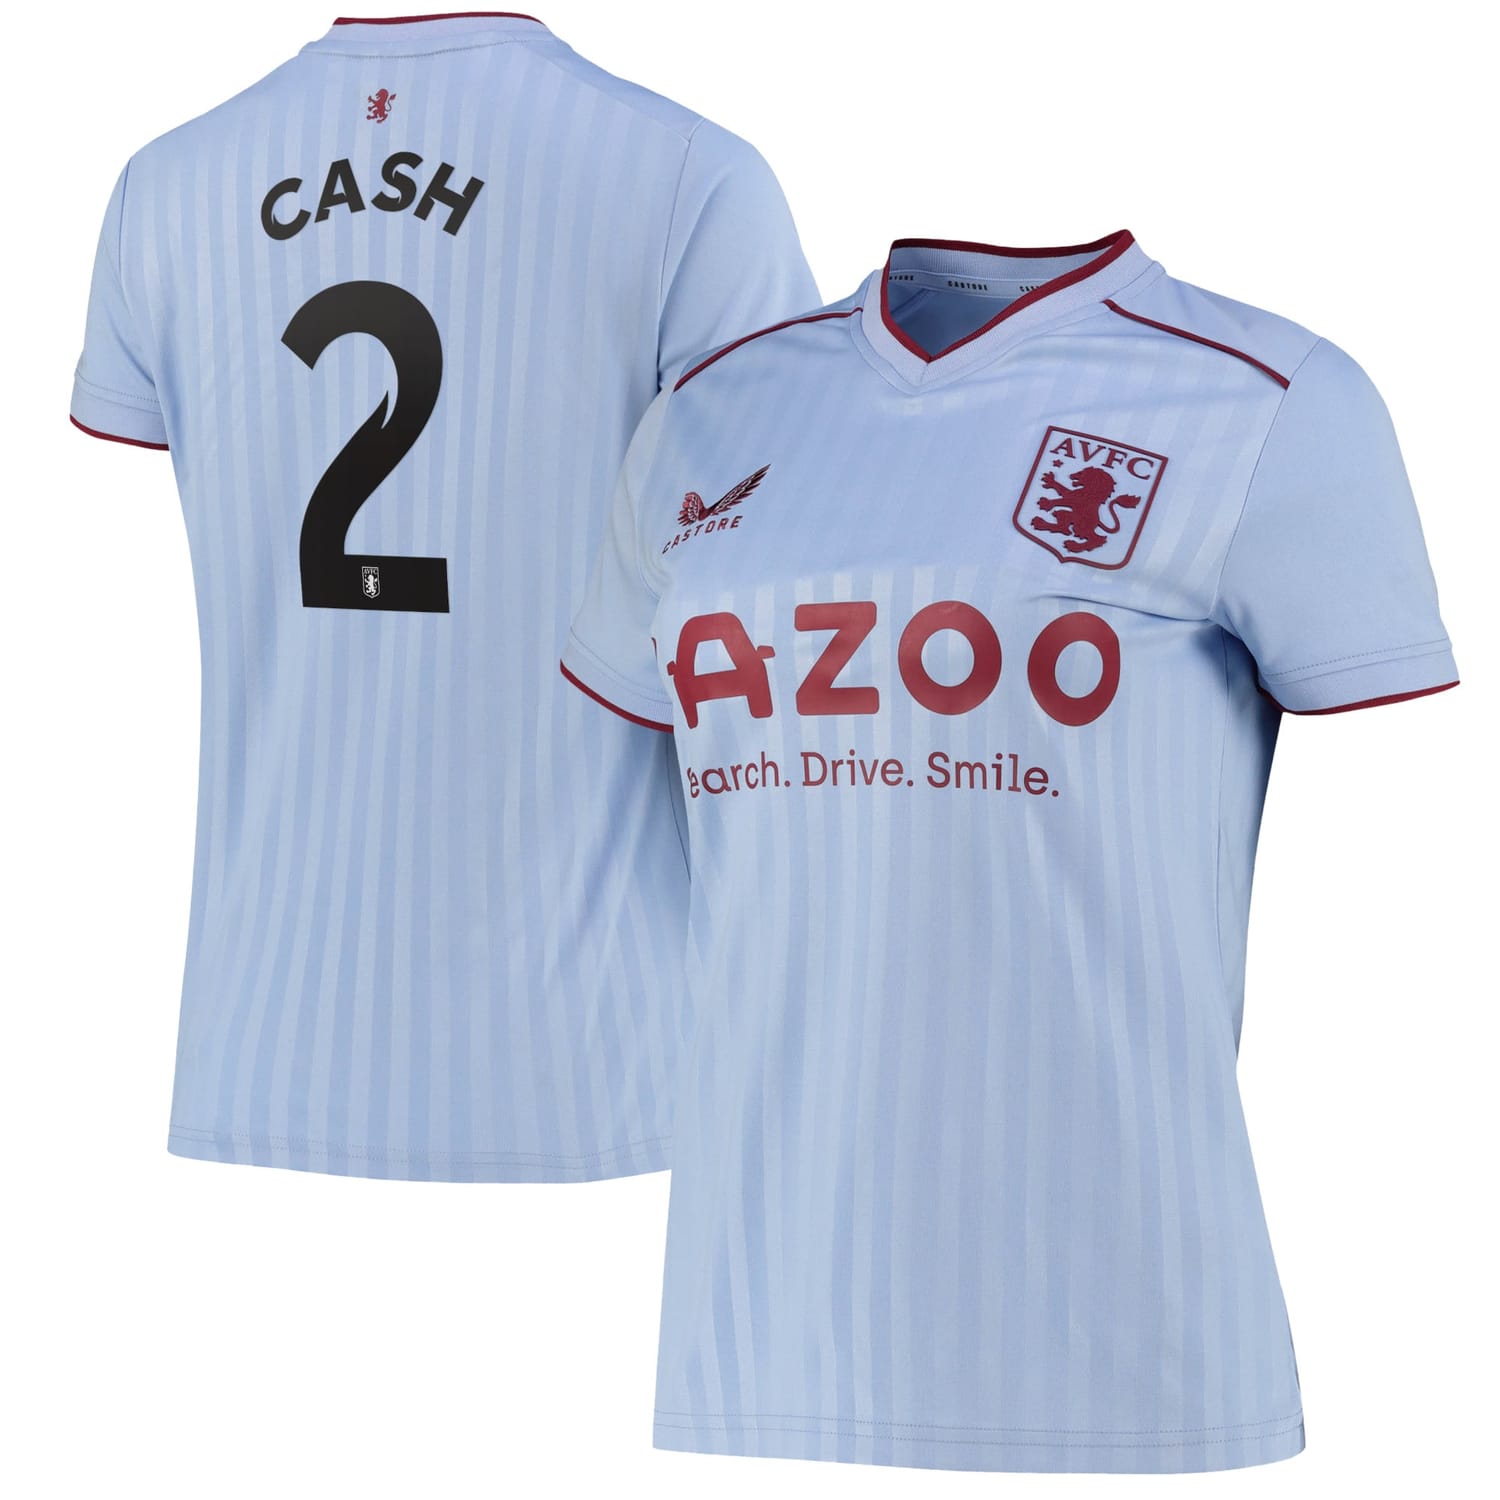 Premier League Aston Villa Away Cup Jersey Shirt 2022-23 player Matty Cash 2 printing for Women